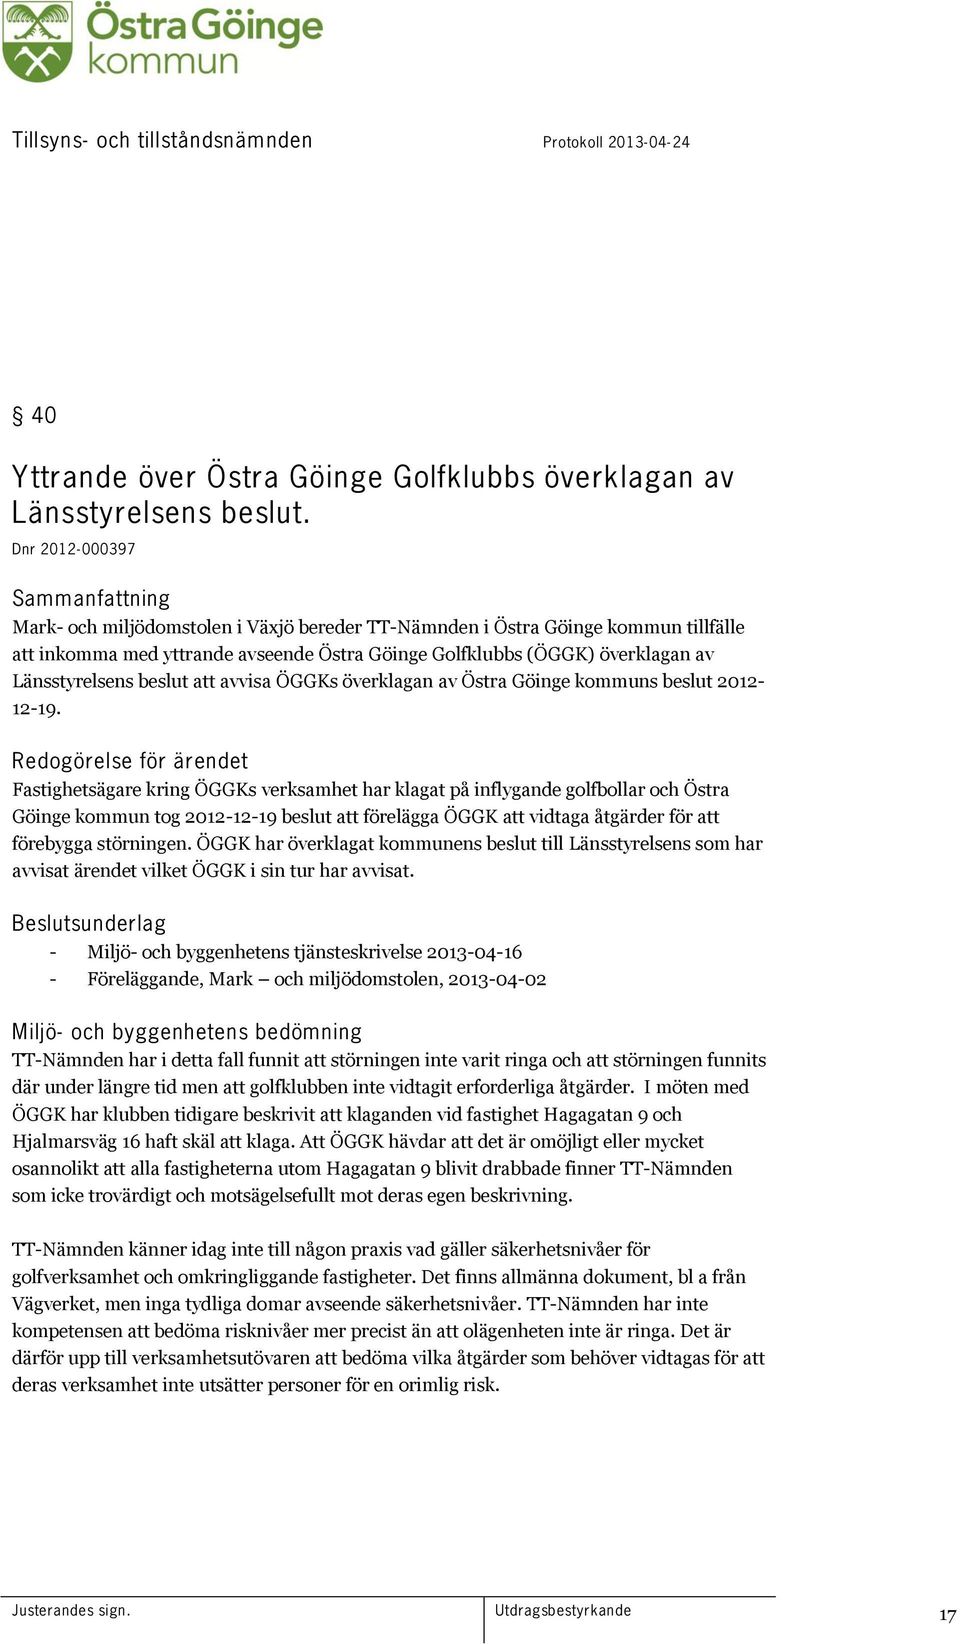 Länsstyrelsens beslut att avvisa ÖGGKs överklagan av Östra Göinge kommuns beslut 2012-12-19.